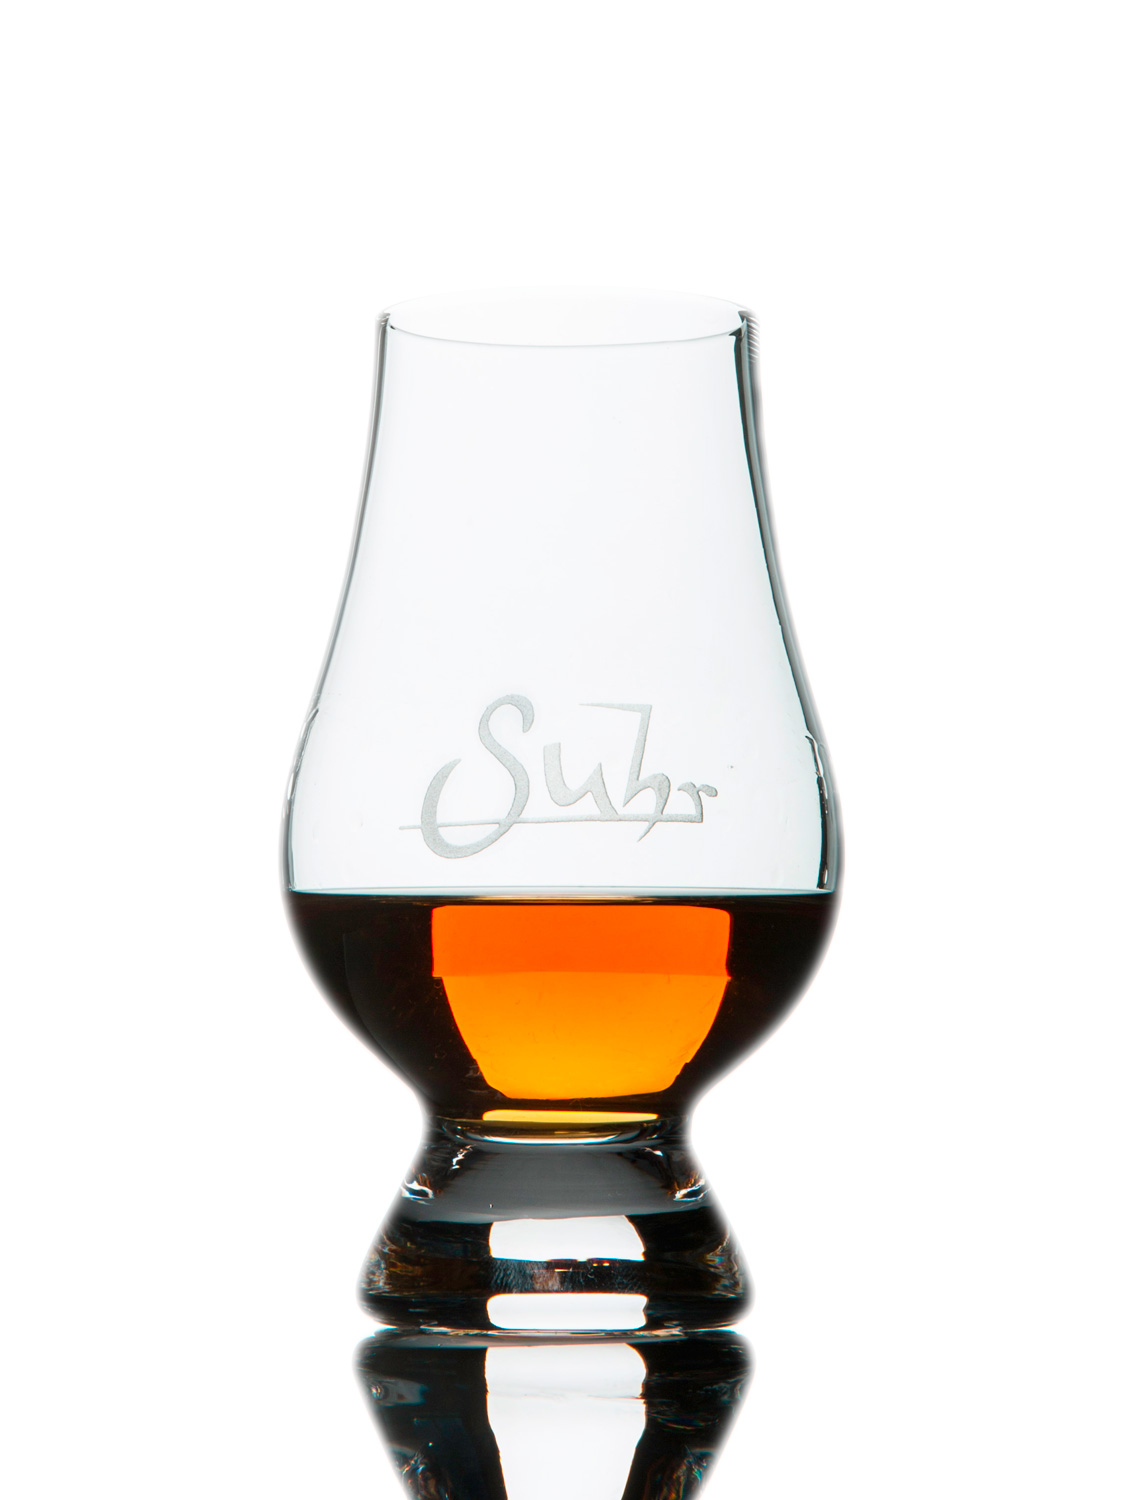 glencairn whisky glass set of 4